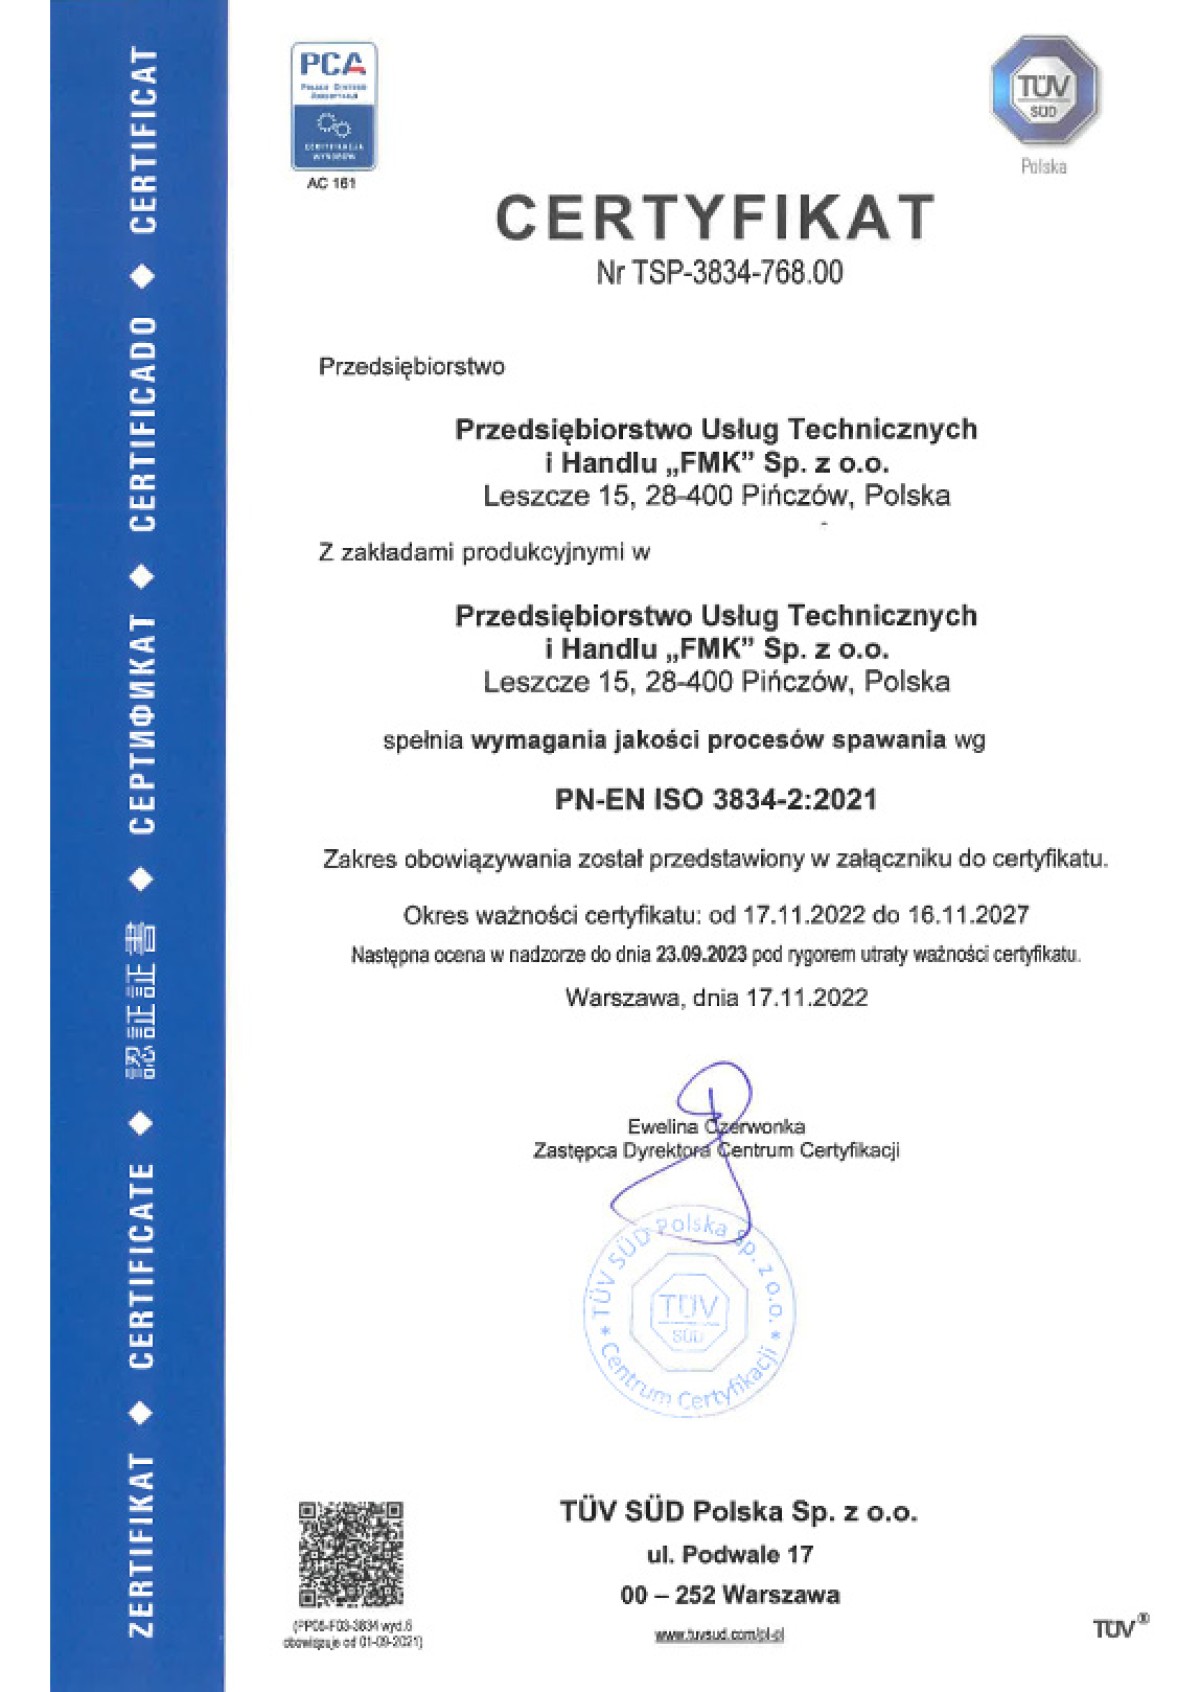 Certyfikaty - Przedsiębiorstwo Usług
Technicznych i Handlu
FMK Sp. z o.o.